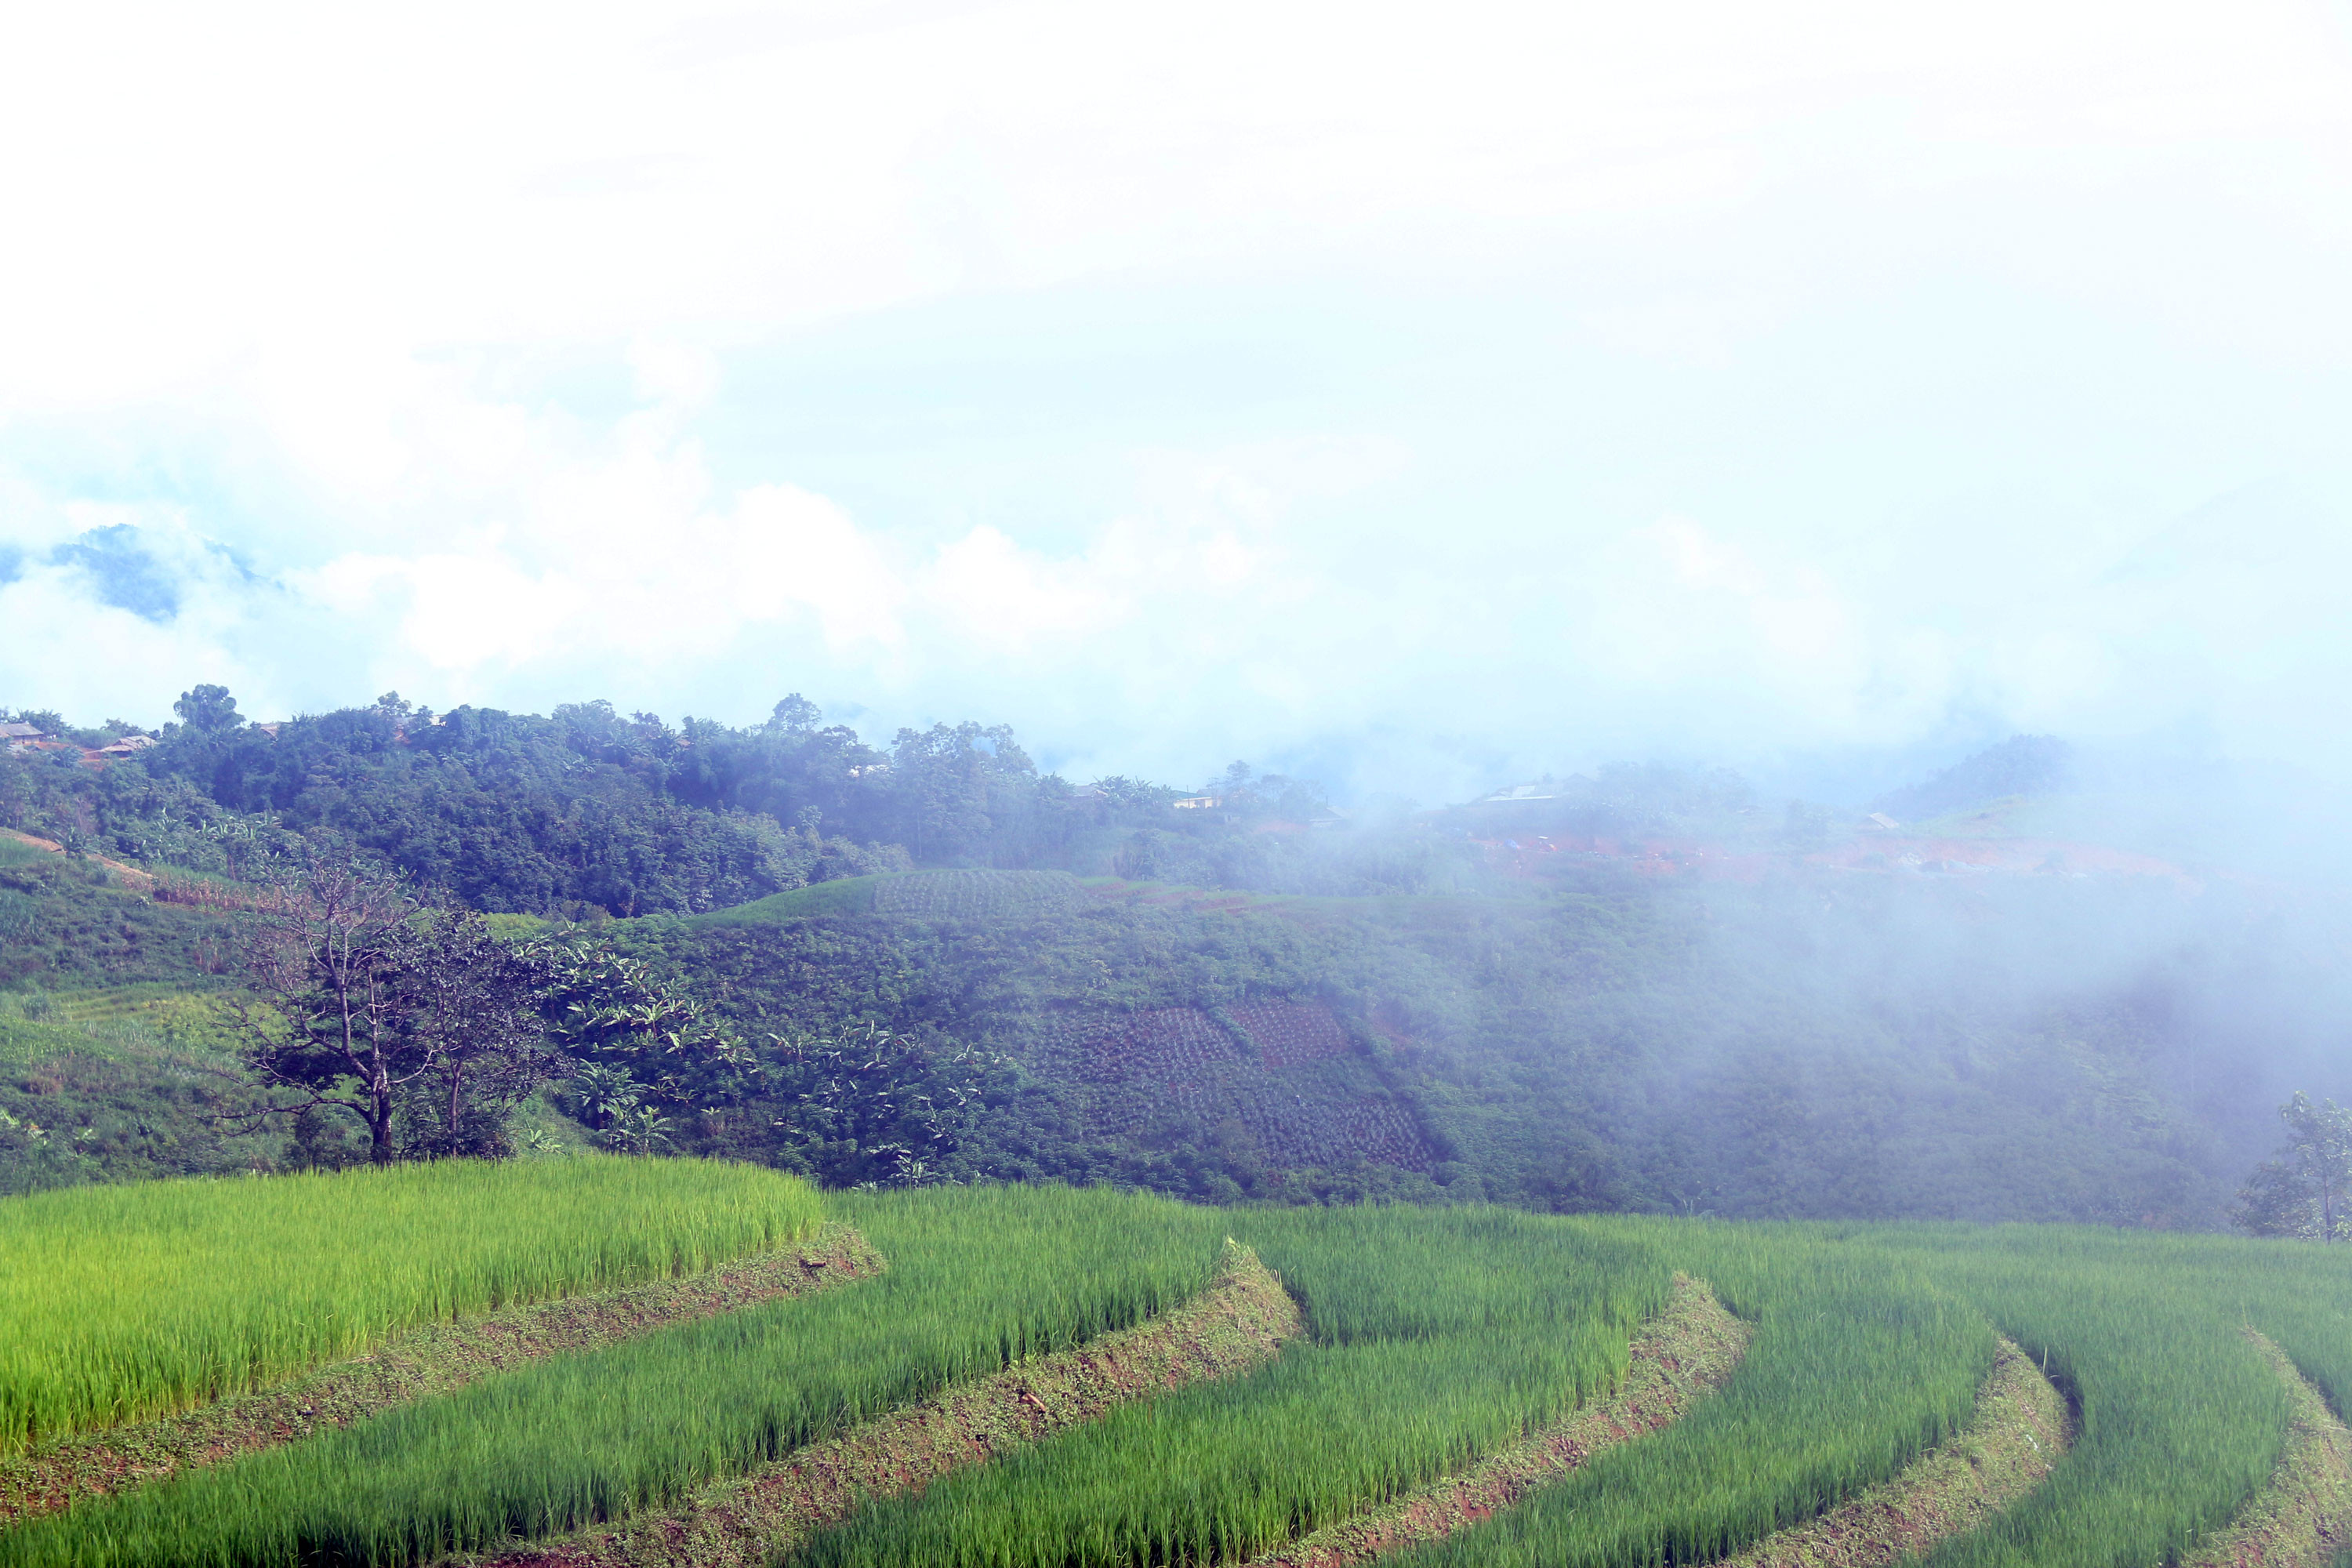 Ở một số điểm của huyện Kỳ Sơn, nhiều cung ruộng lúa đã bắt đầu lên xanh tốt hứa hẹn một vụ mùa bội thu. Ảnh: Đào Thọ